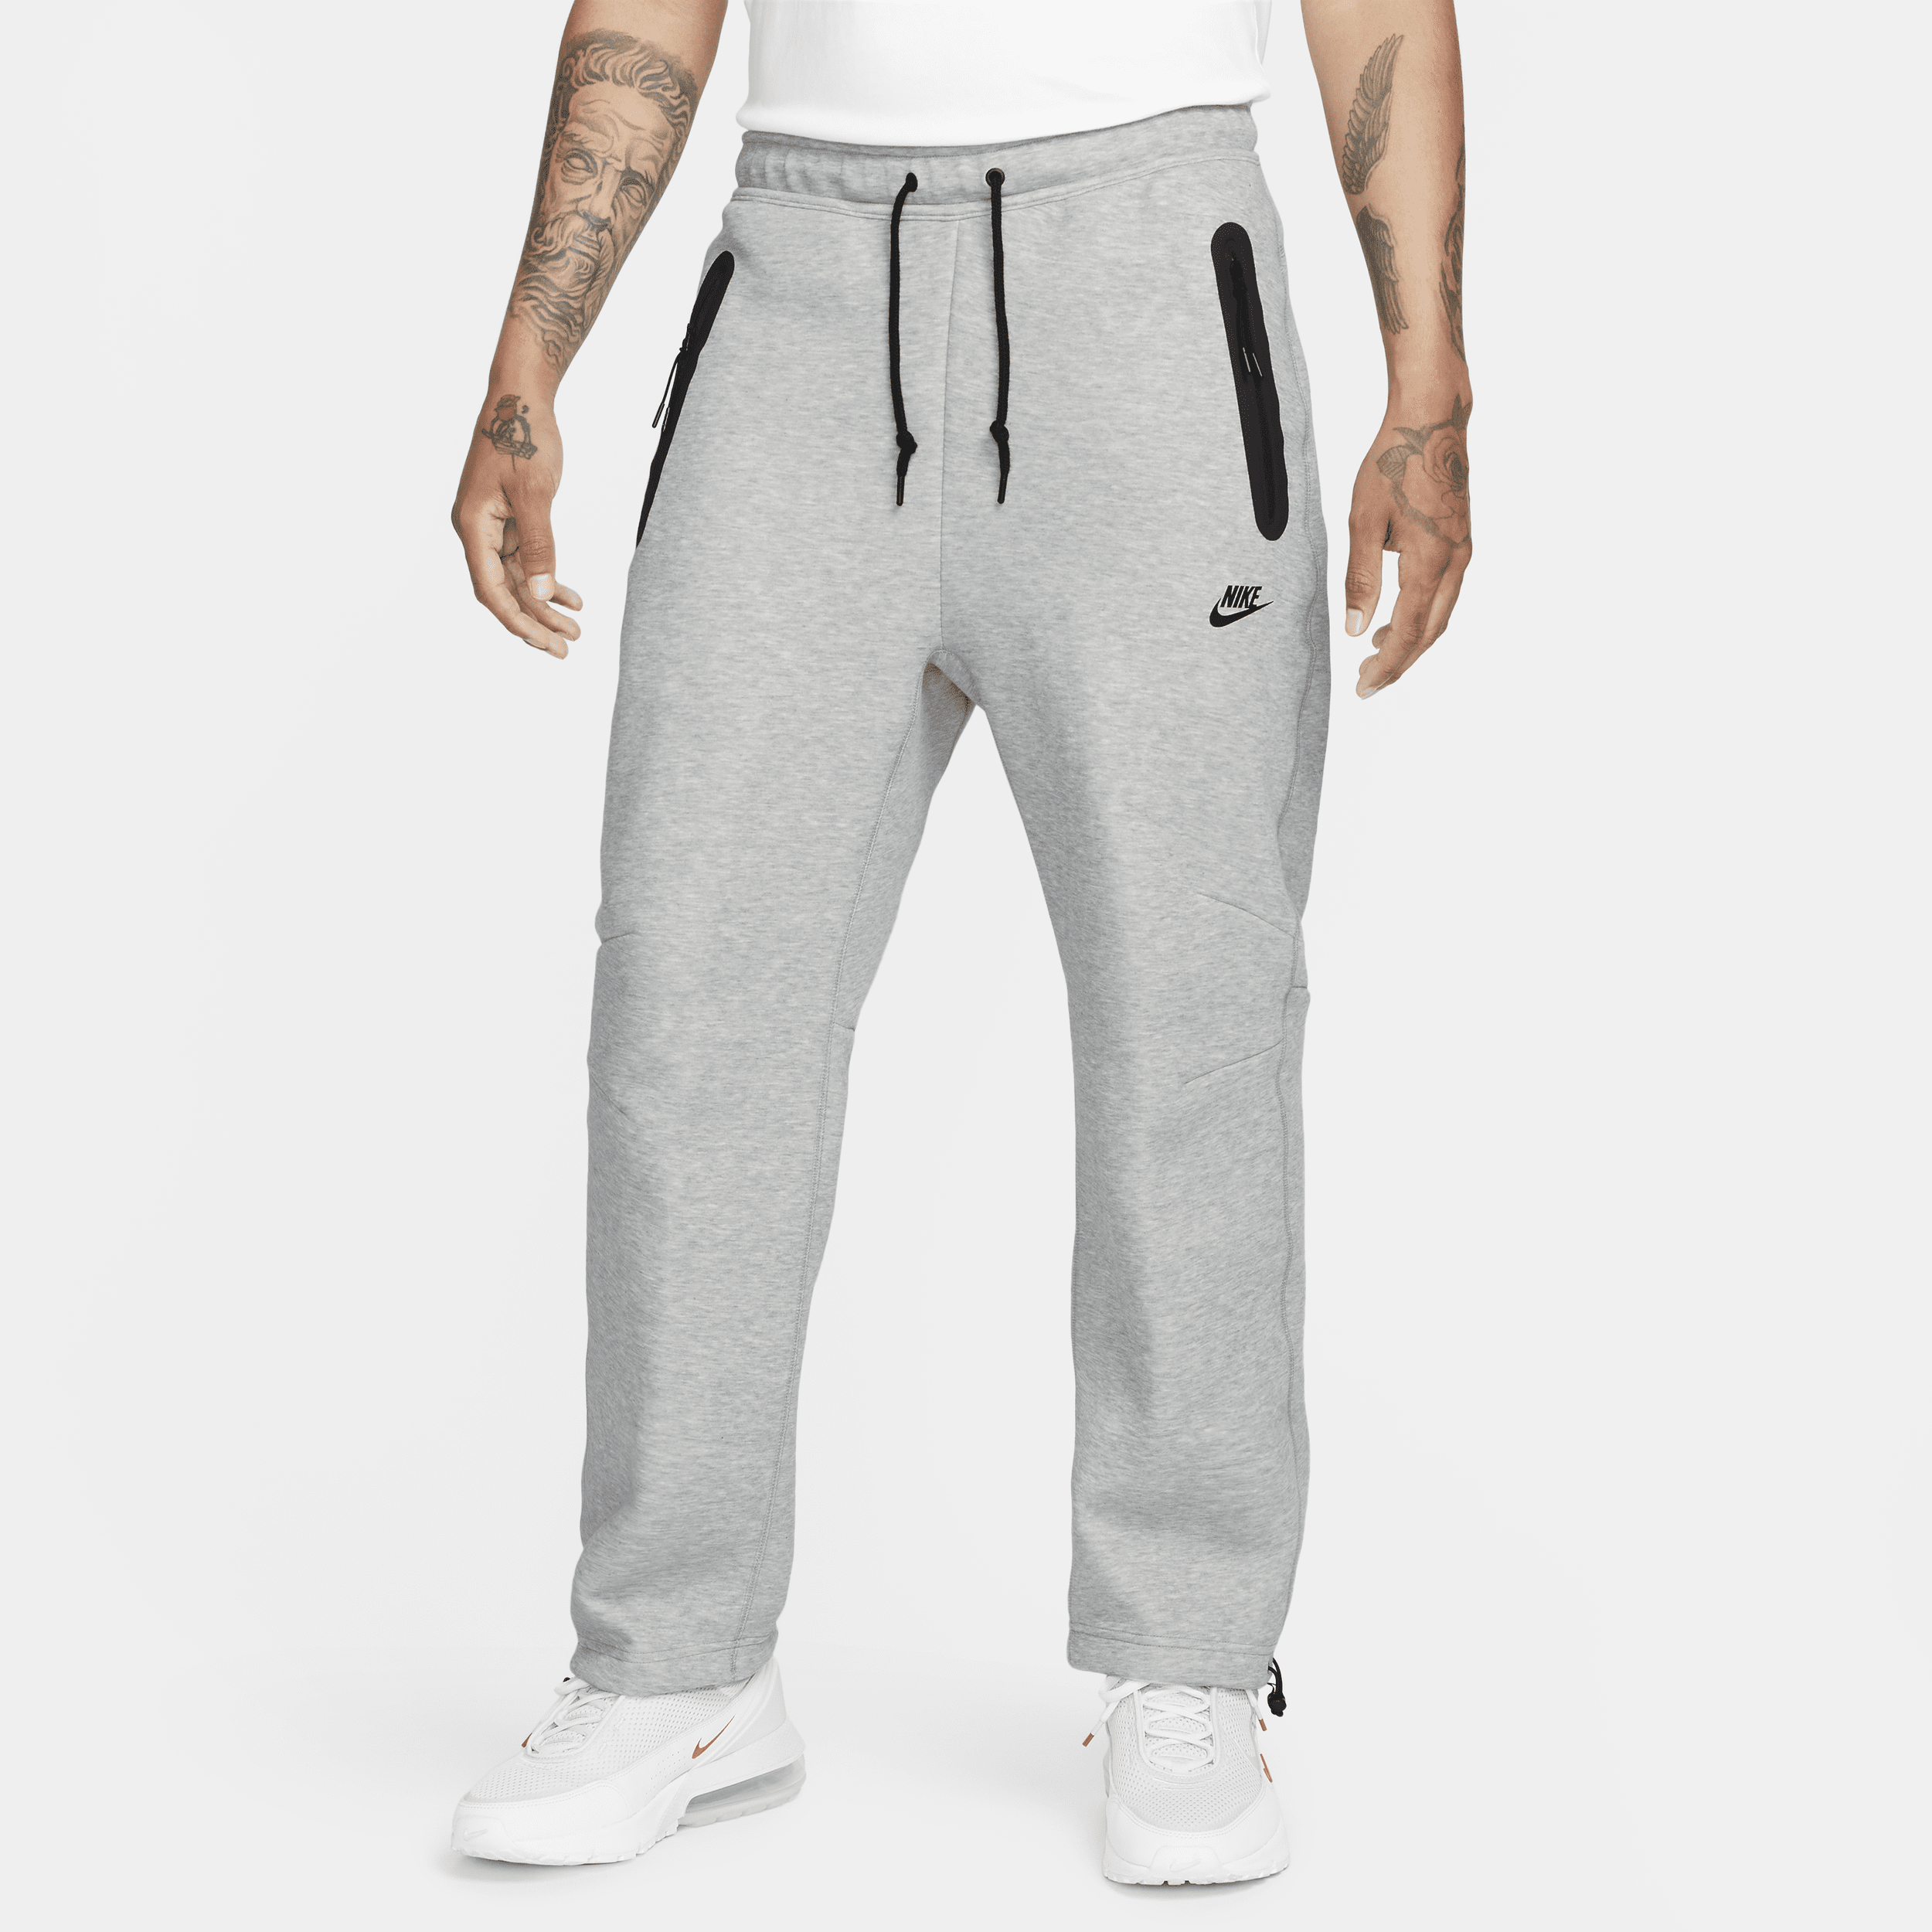 Pantaloni tuta con orlo aperto Nike Sportswear Tech Fleece – Uomo - Grigio